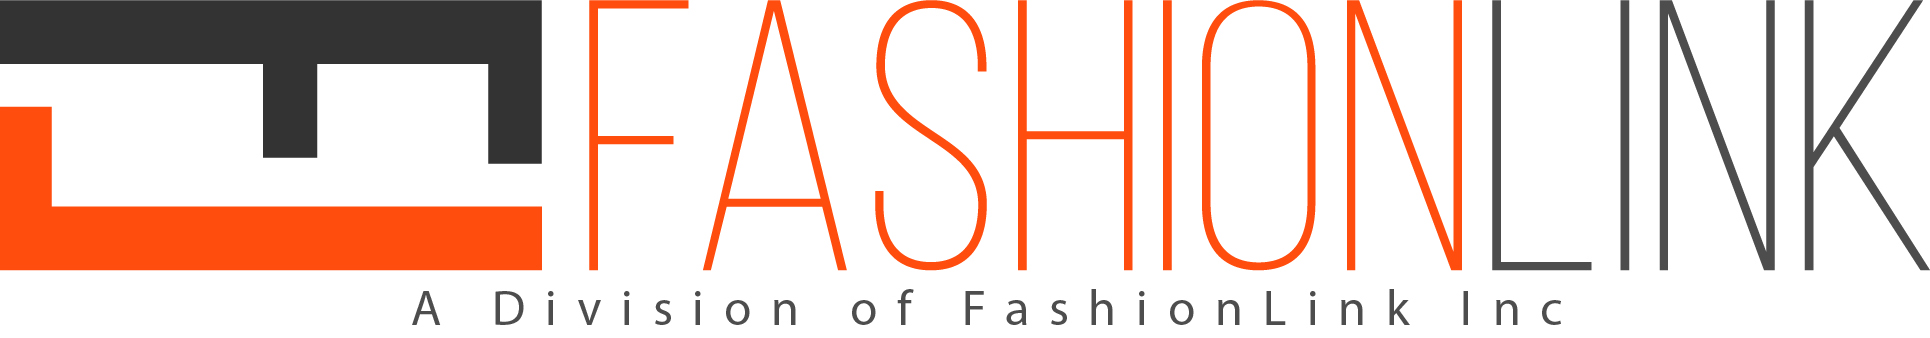 FashionLink logo